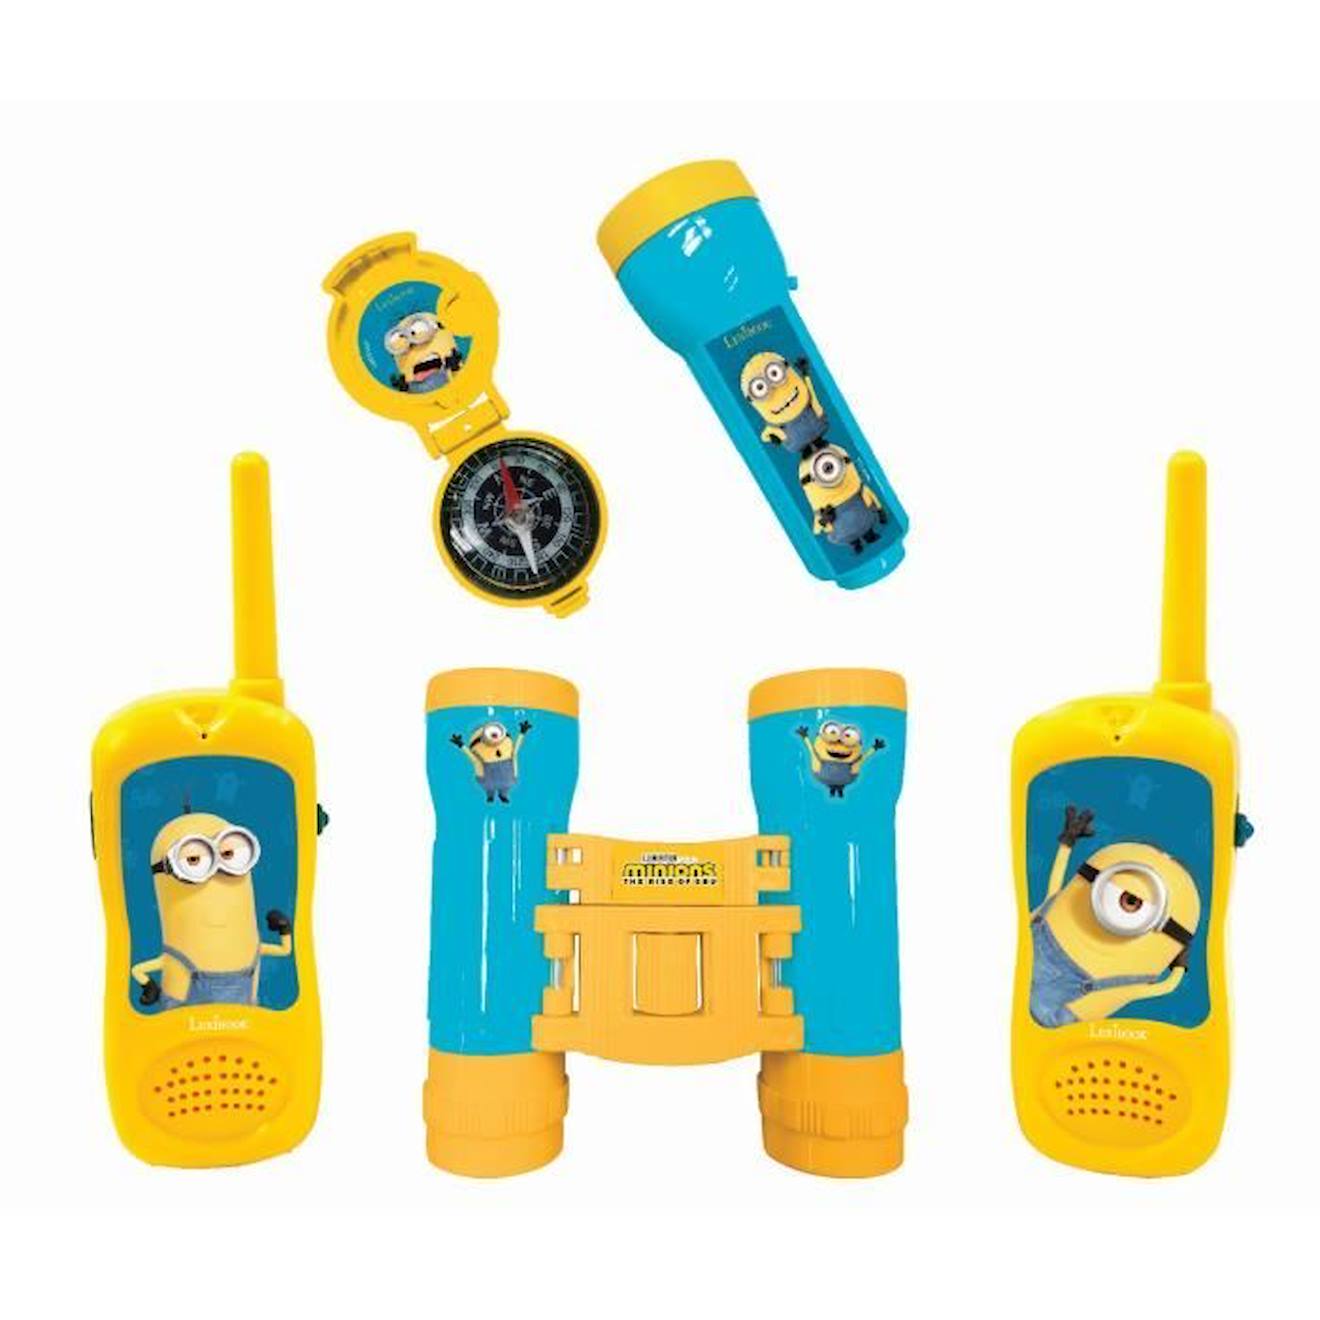 Kit D’aventurier Avec Talkie-walkies Portée 120m Les Minions Jaune